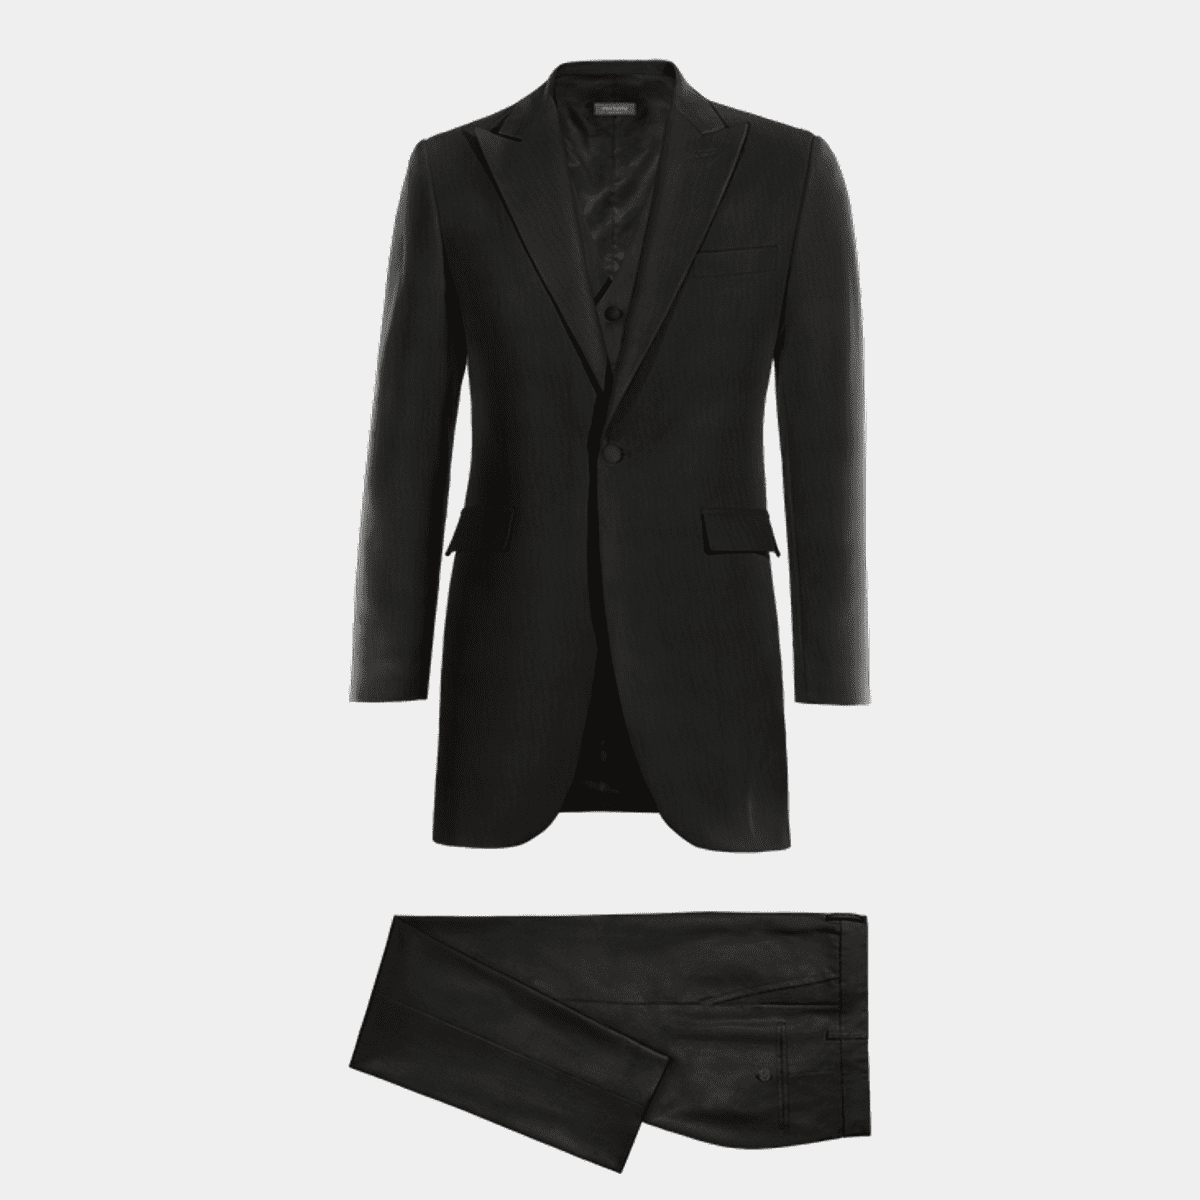 Shiny black Tailored Peaky lapel frock coat with black waistcoat